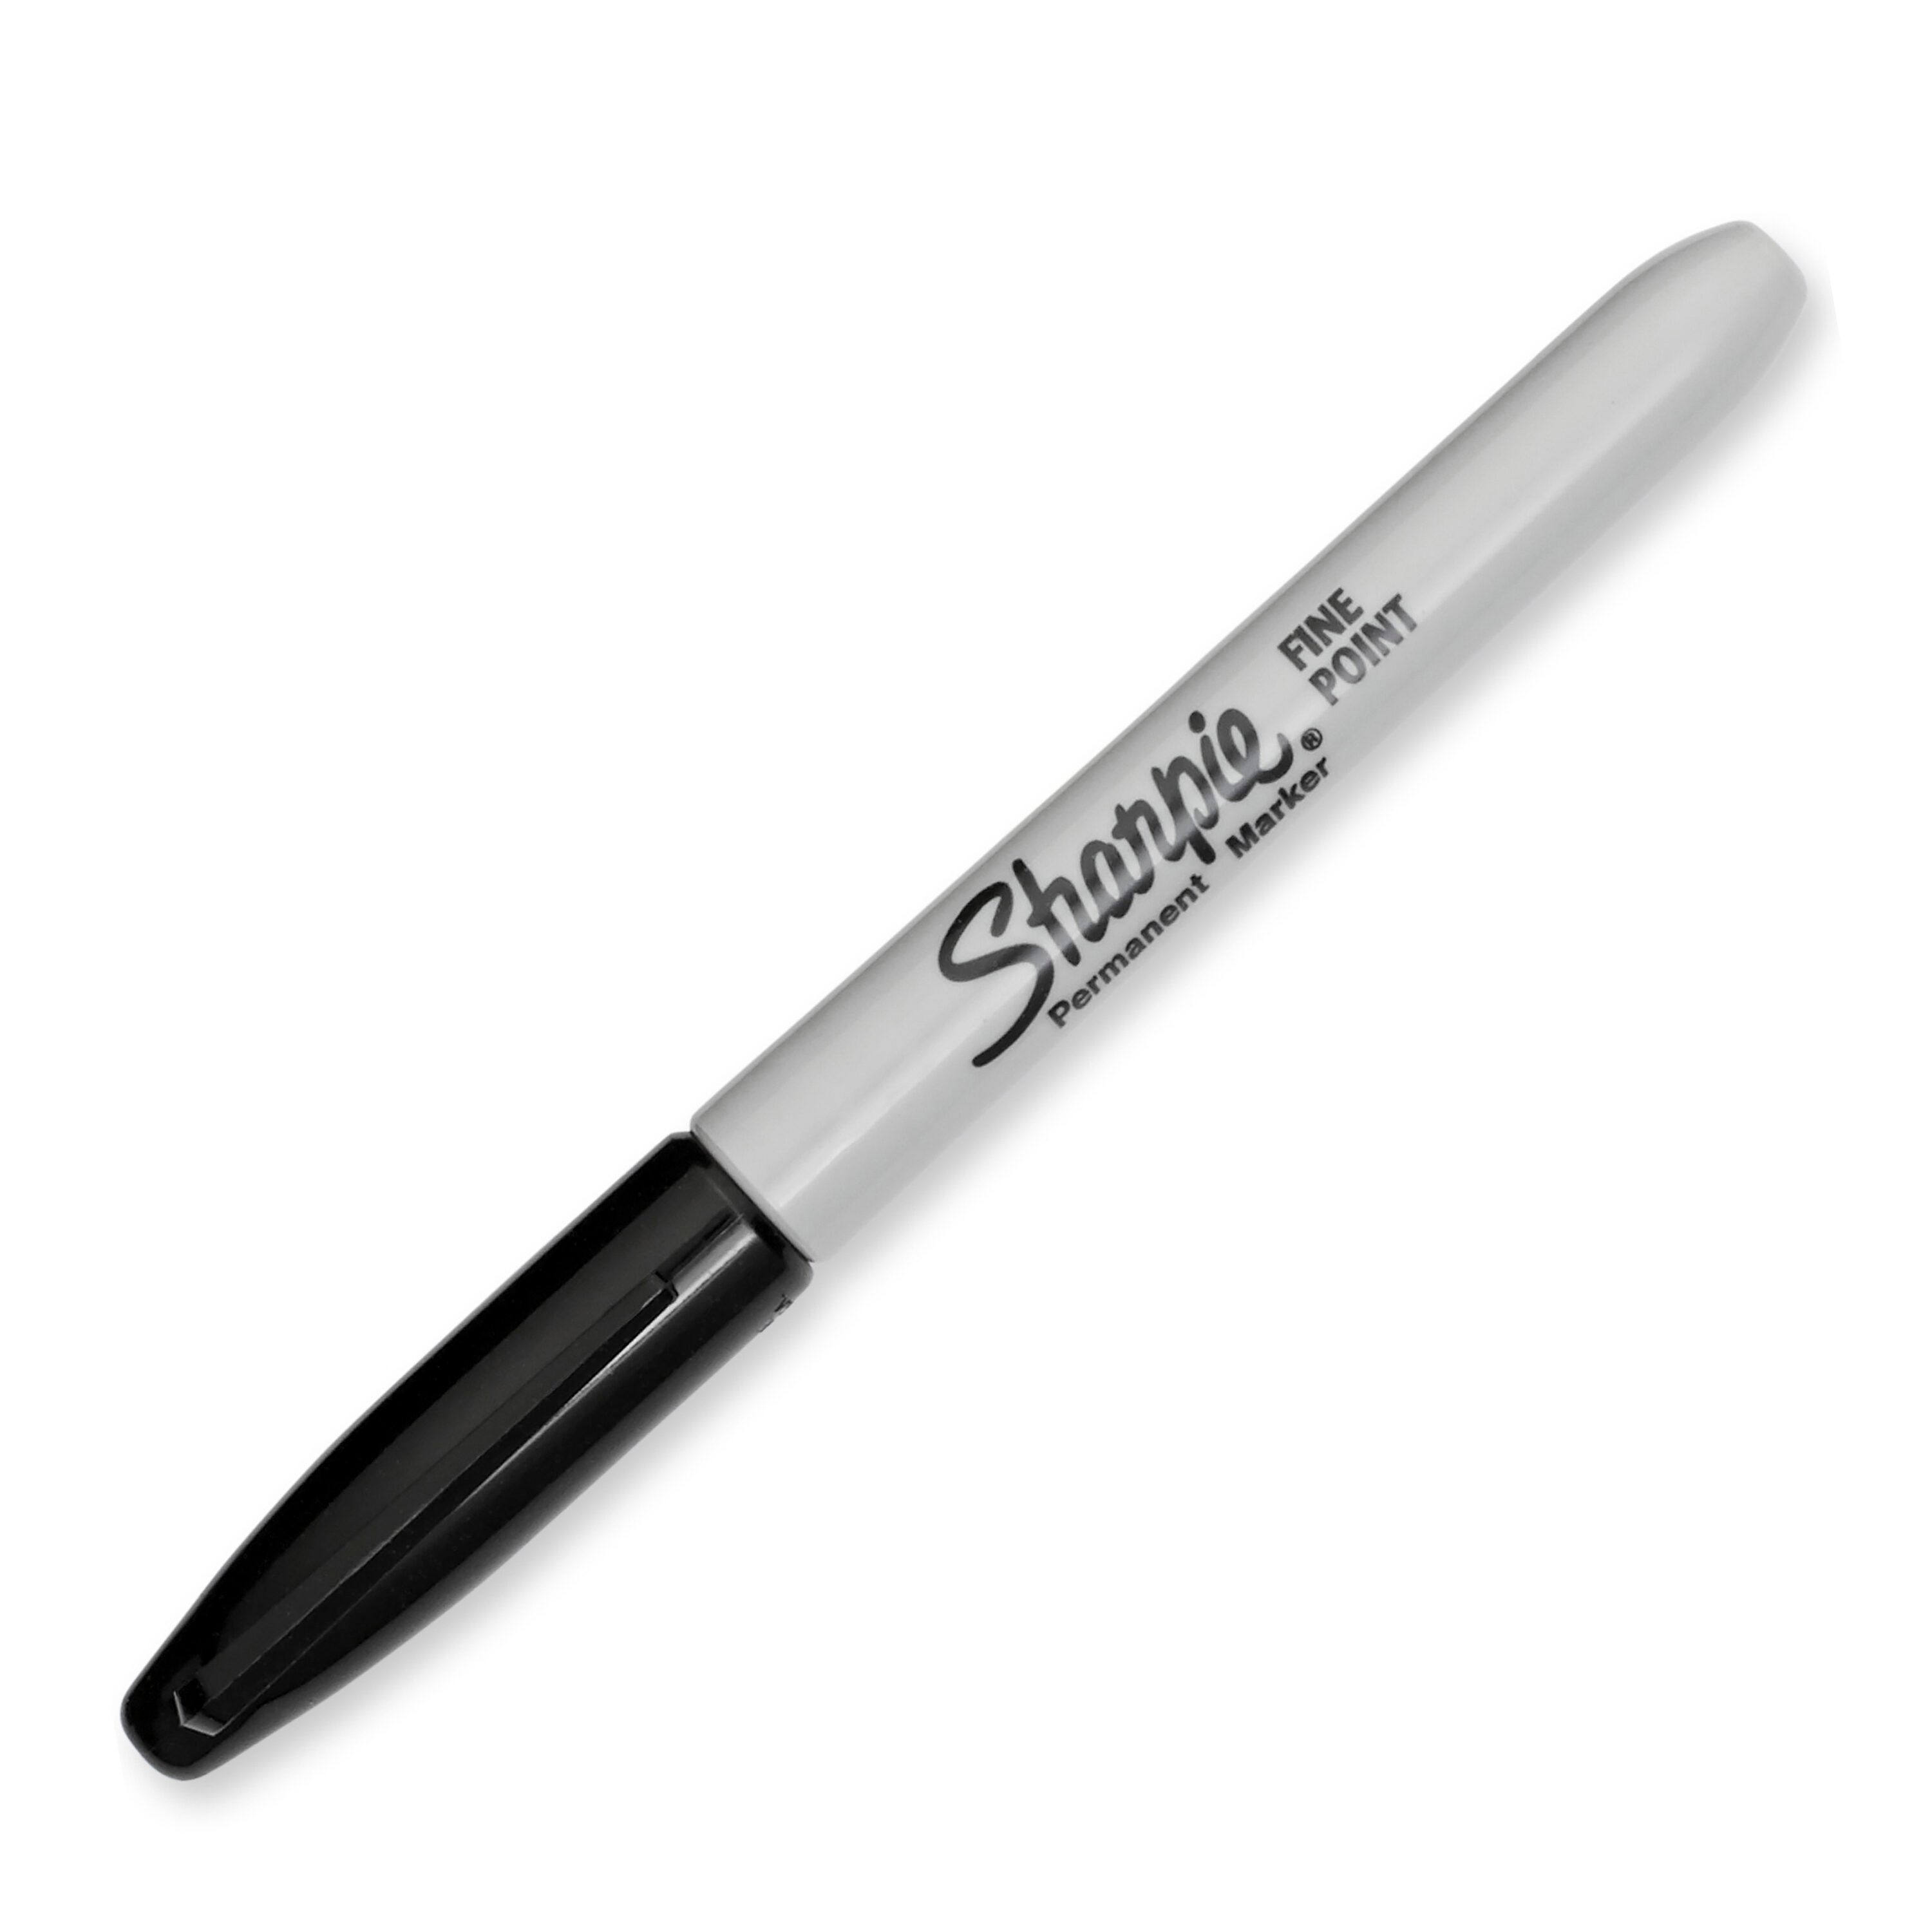 Black Medium Point Sharpie Pens - 2 Piece Set